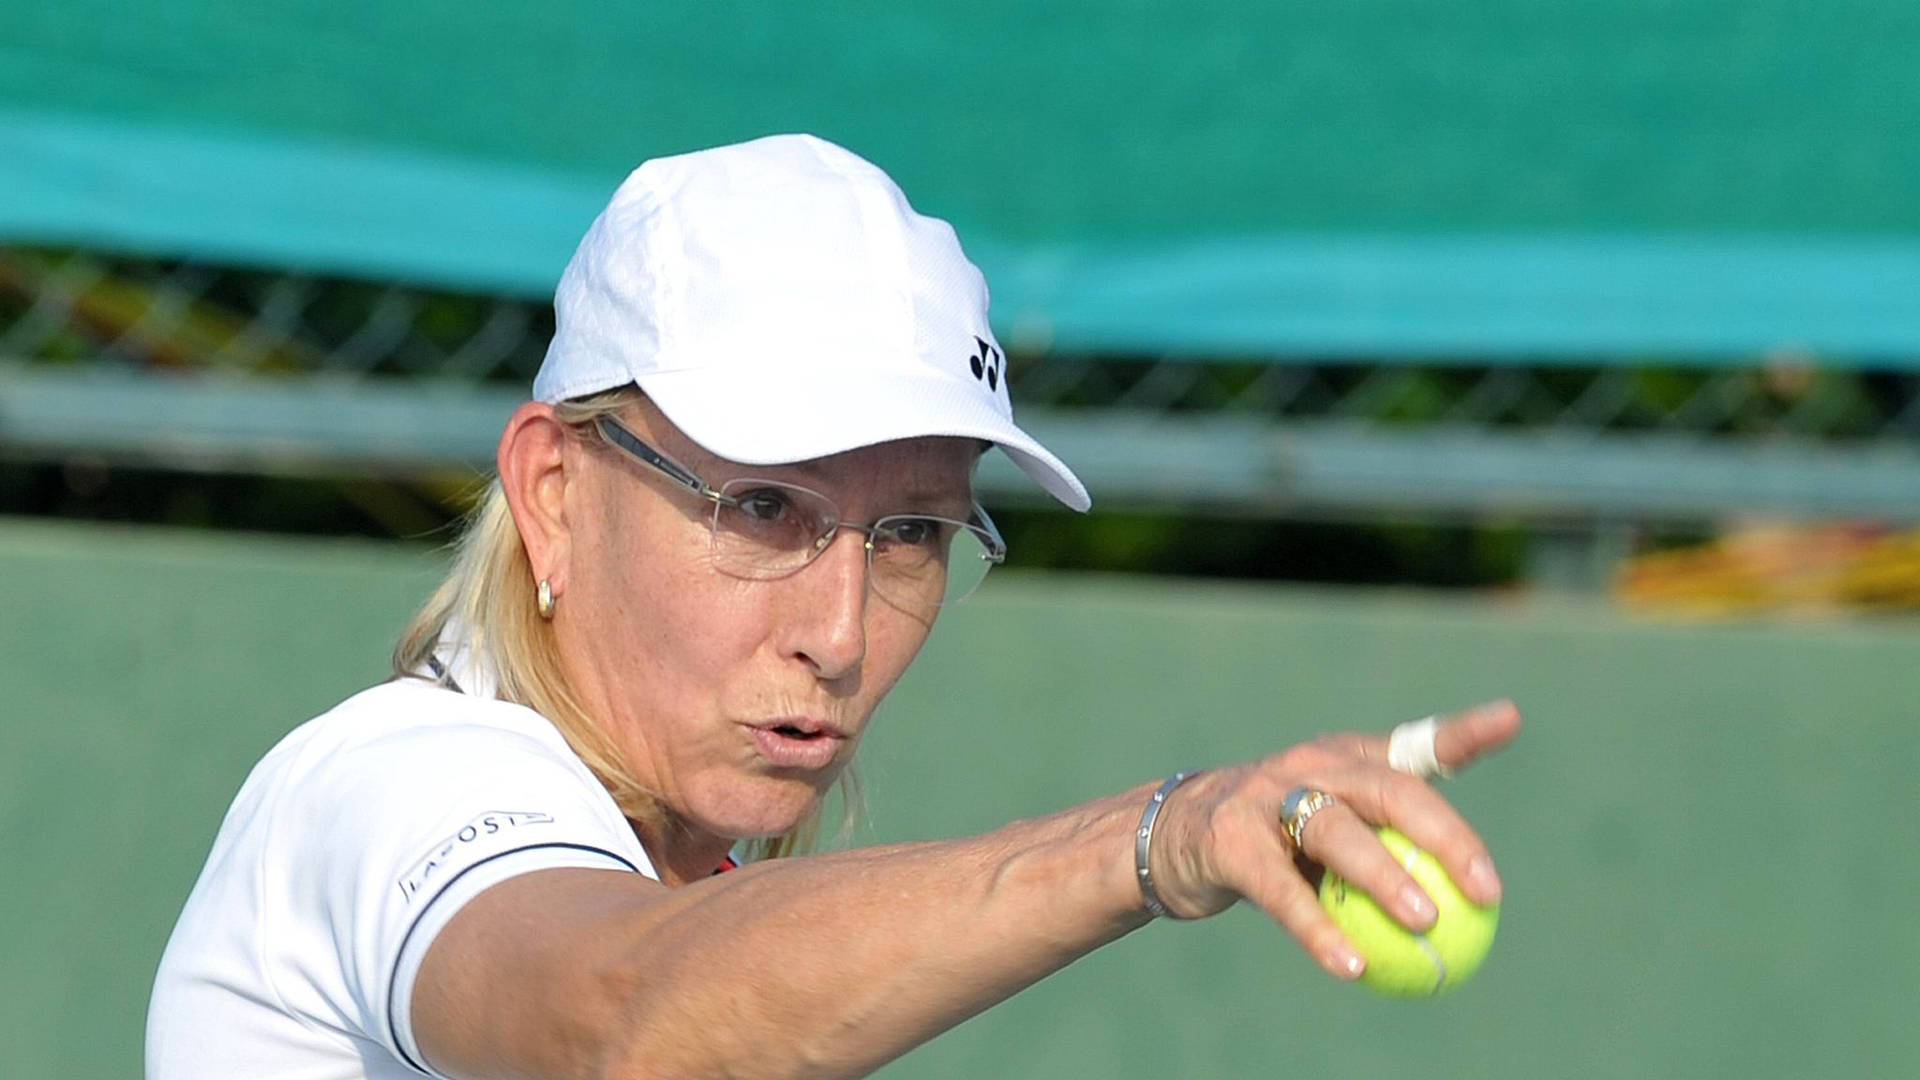 Martinanavratilova - Una Leggenda Del Tennis In Azione. Sfondo